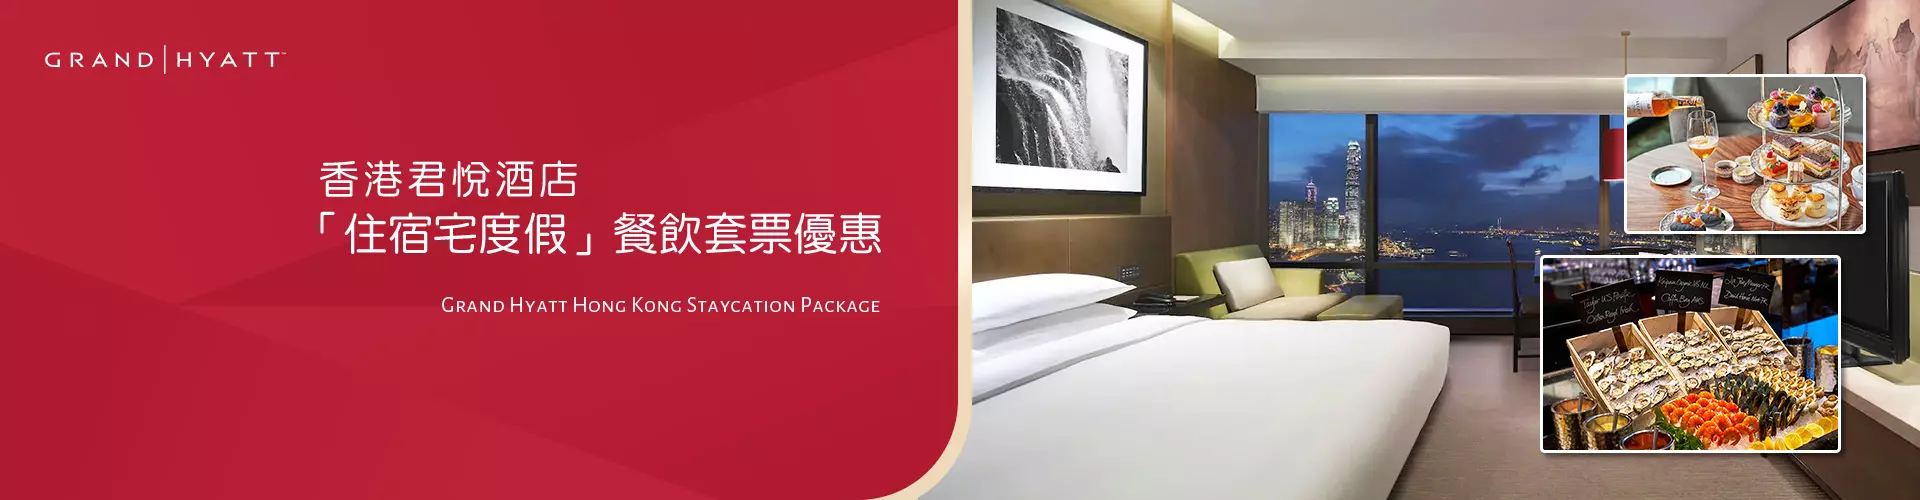 香港君悅酒店「住宿宅度假」餐飲套票優惠